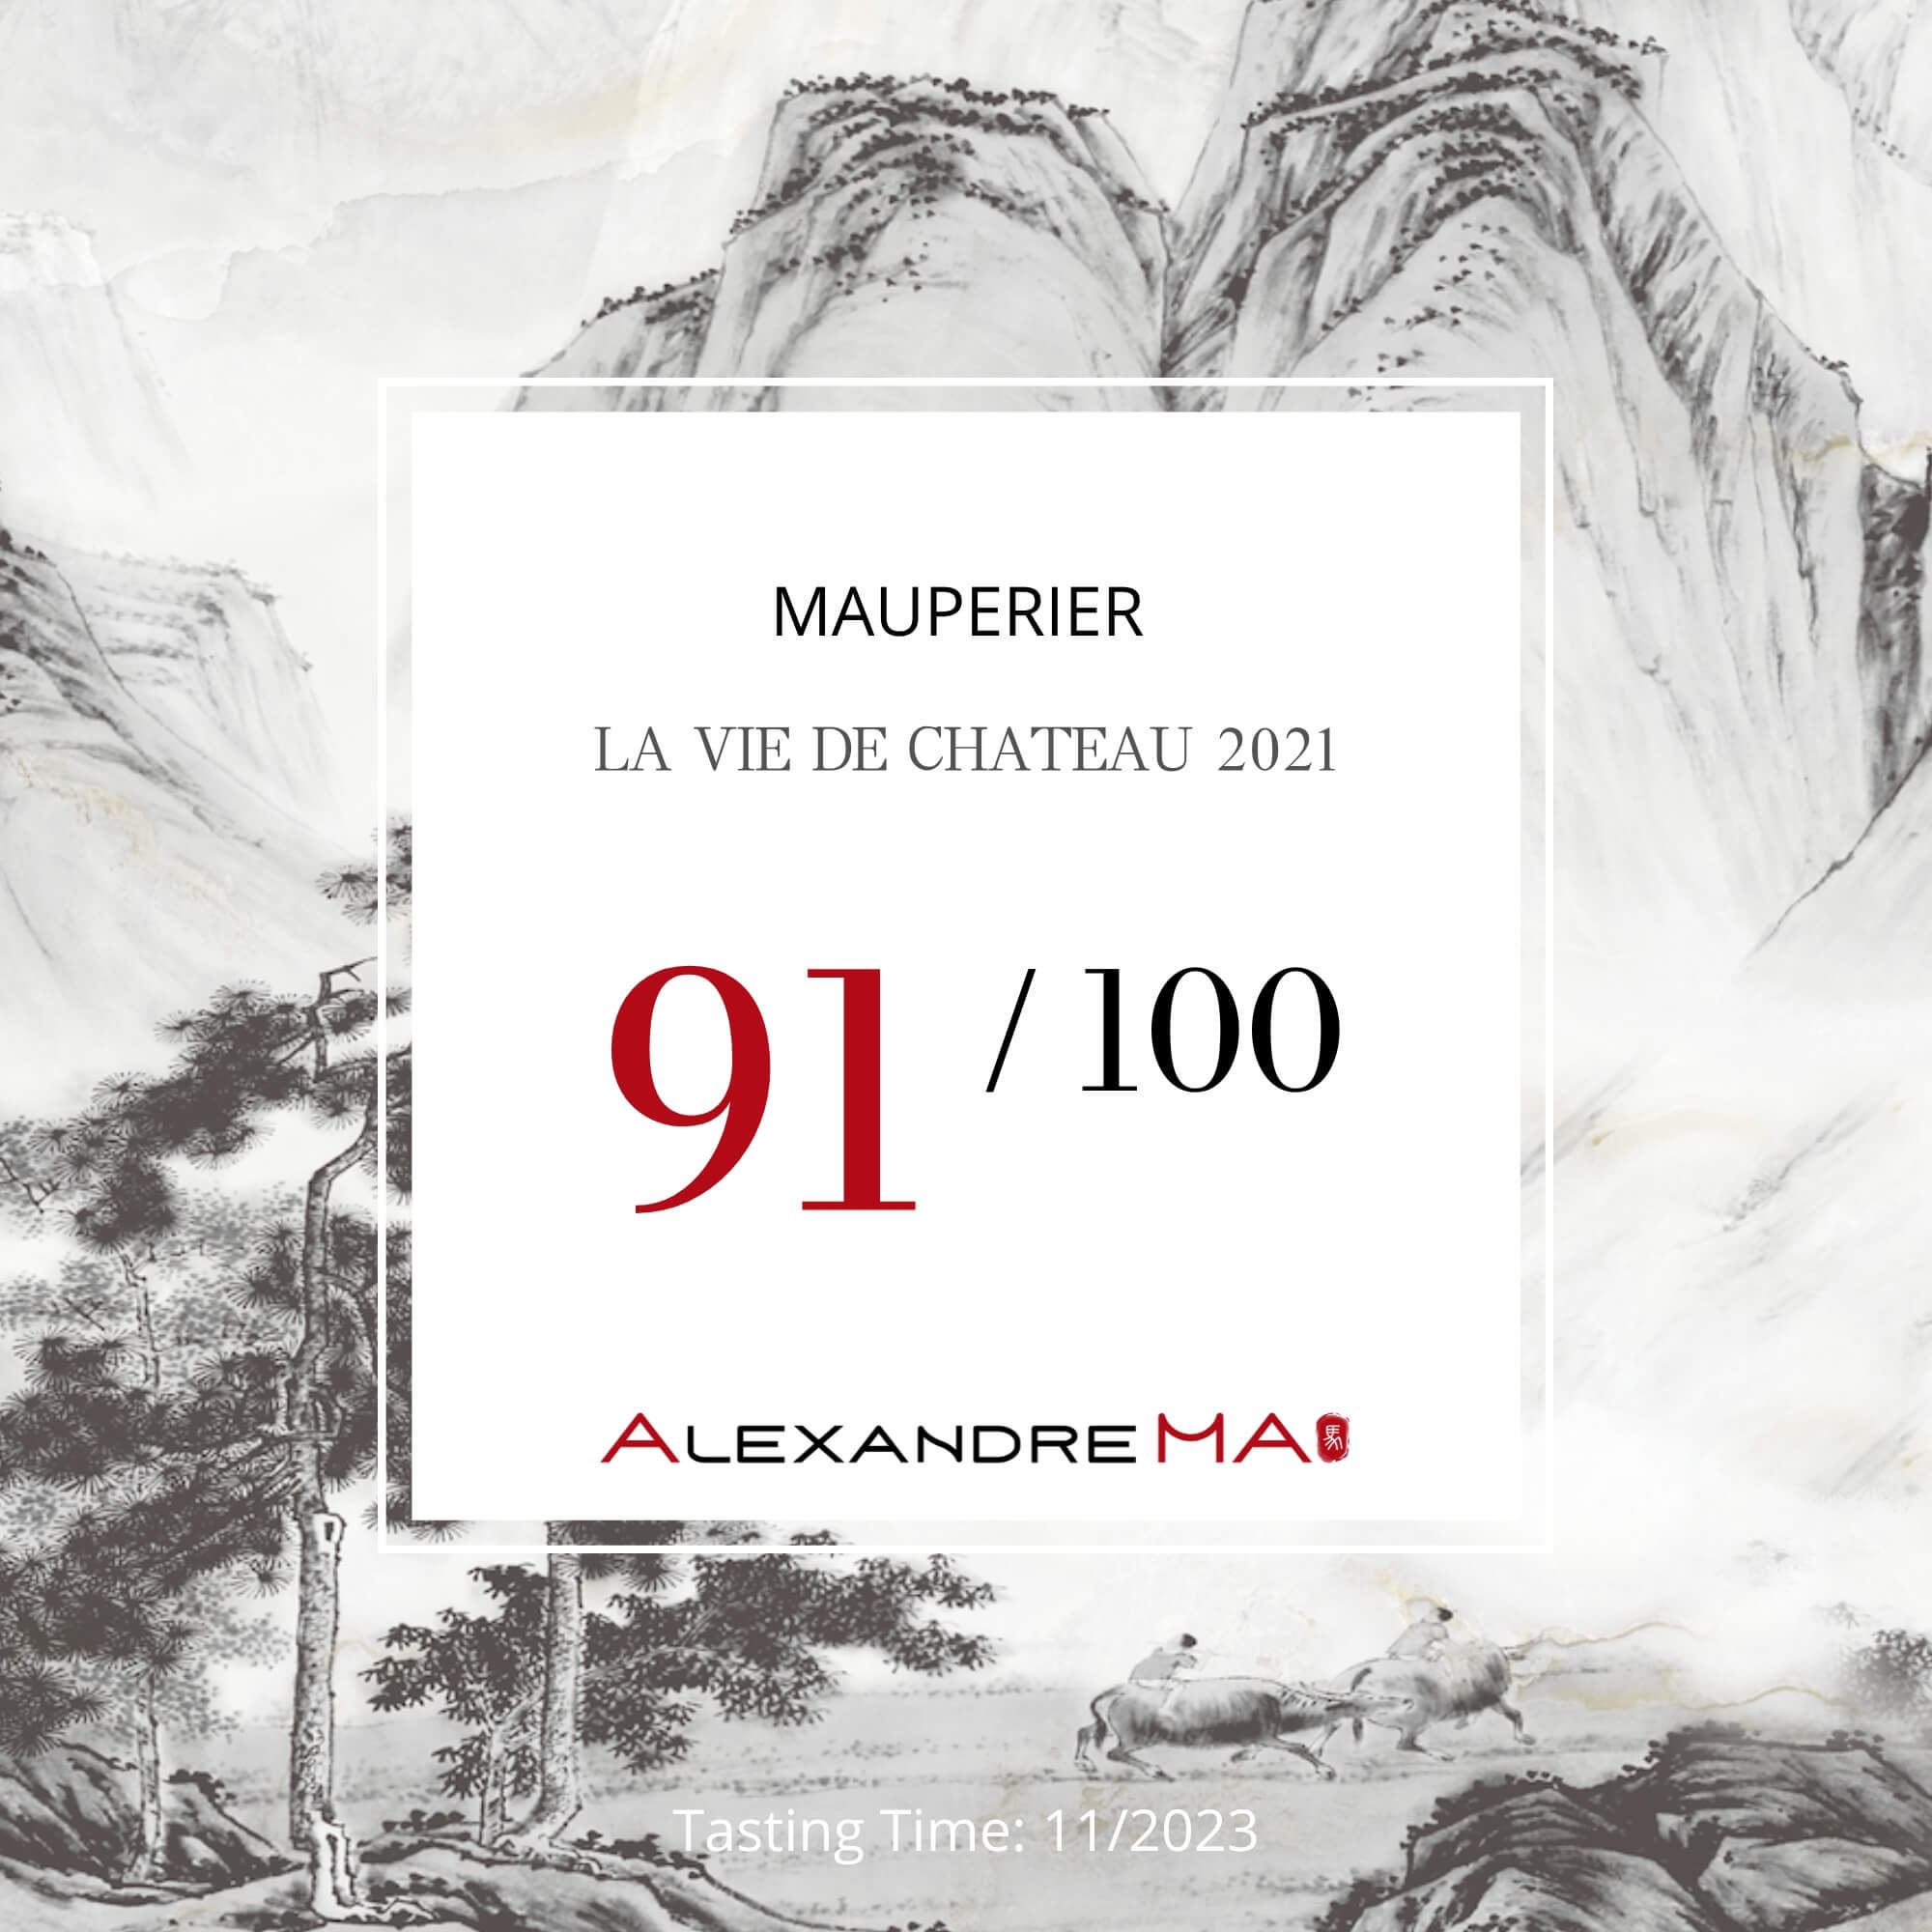 Mauperier-La Vie de Château 2021 - Alexandre MA